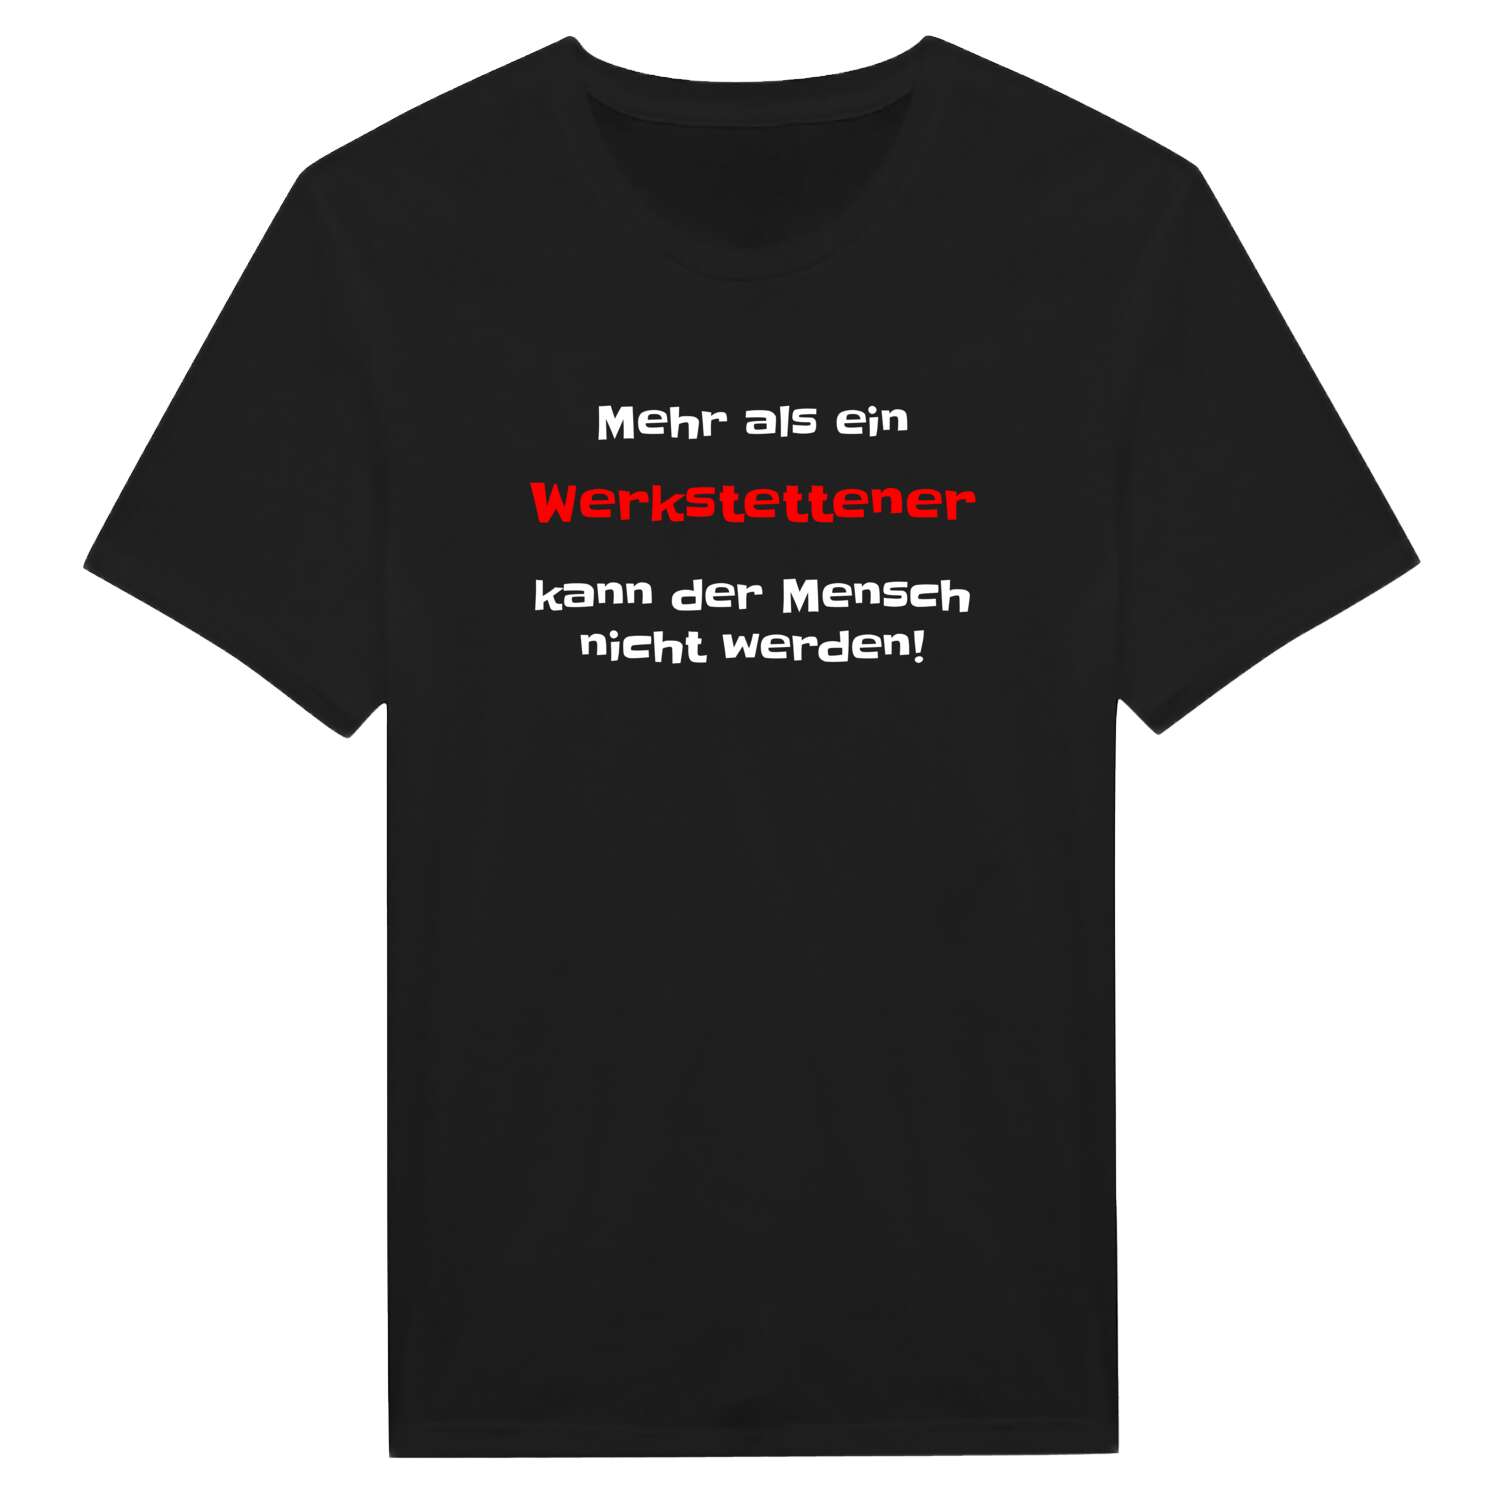 Werkstetten T-Shirt »Mehr als ein«